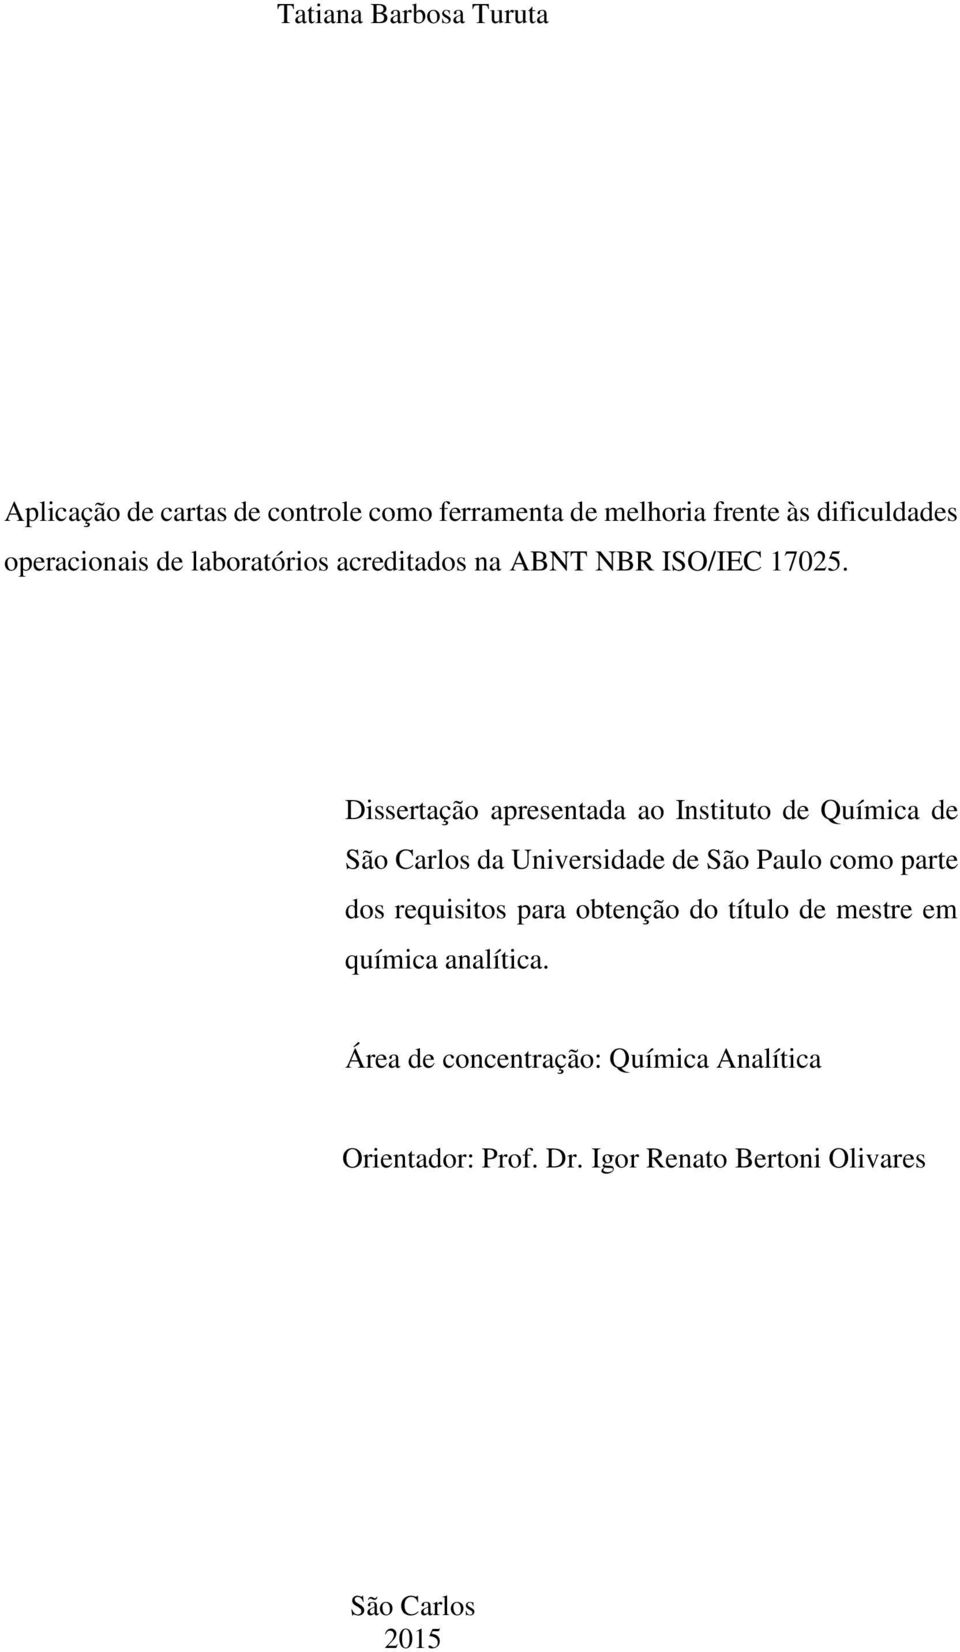 Dissertação apresentada ao Instituto de Química de São Carlos da Universidade de São Paulo como parte dos